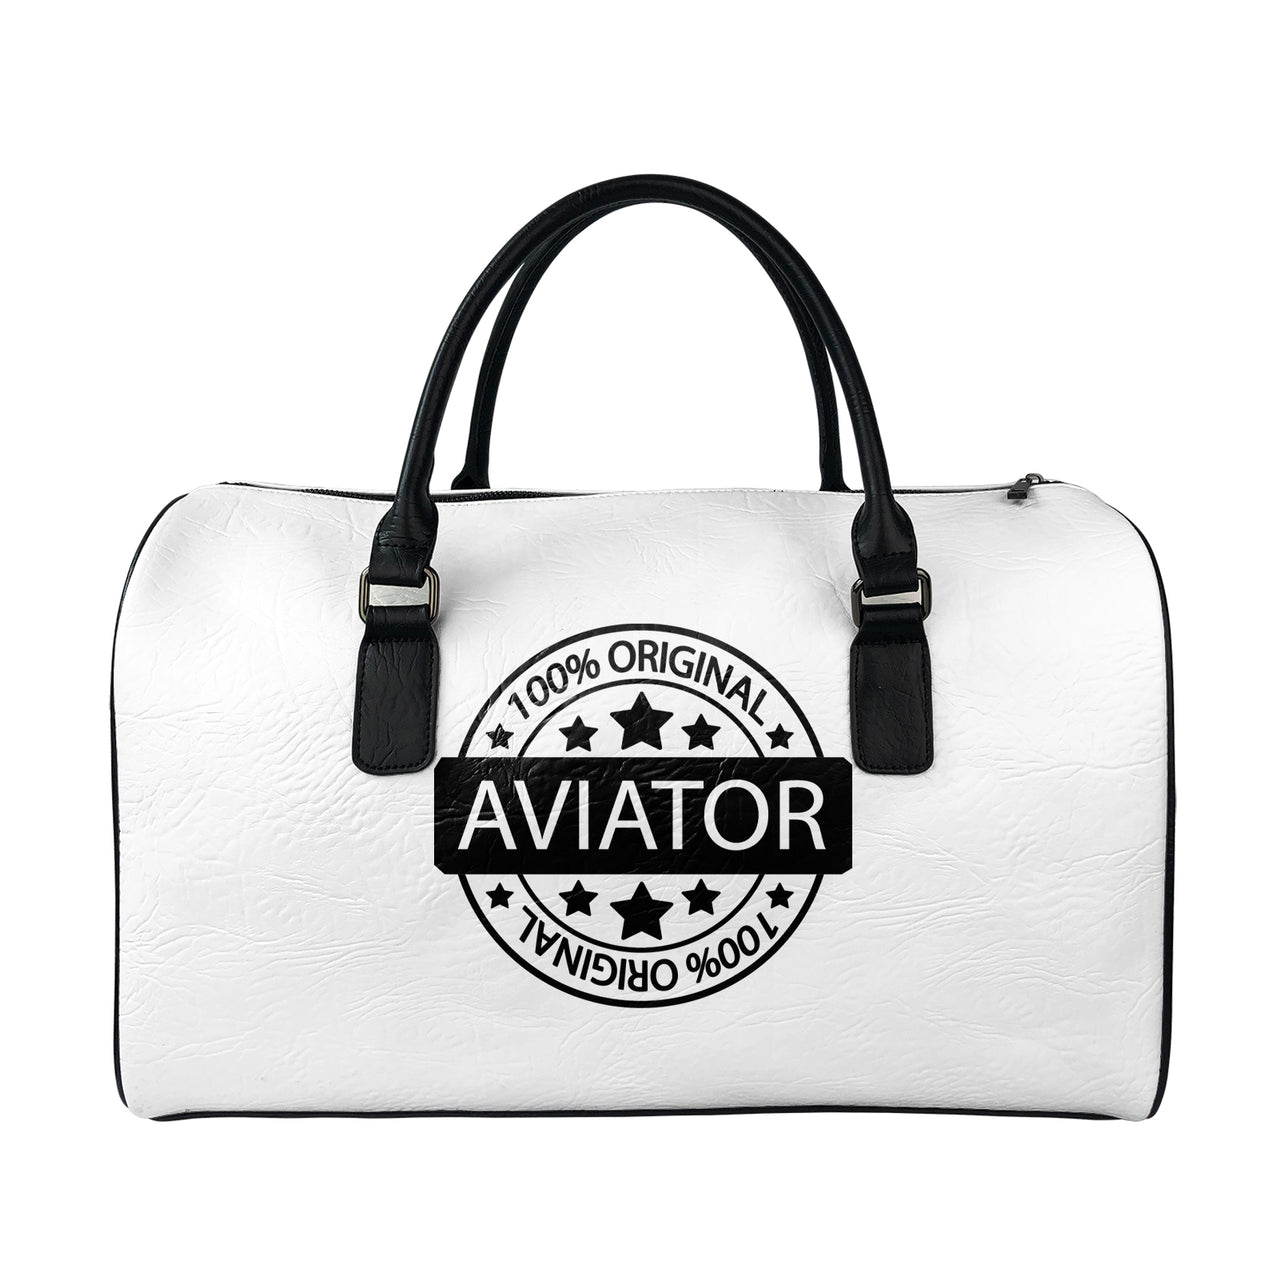 %100 Original Aviator Designed Leather Travel Bag